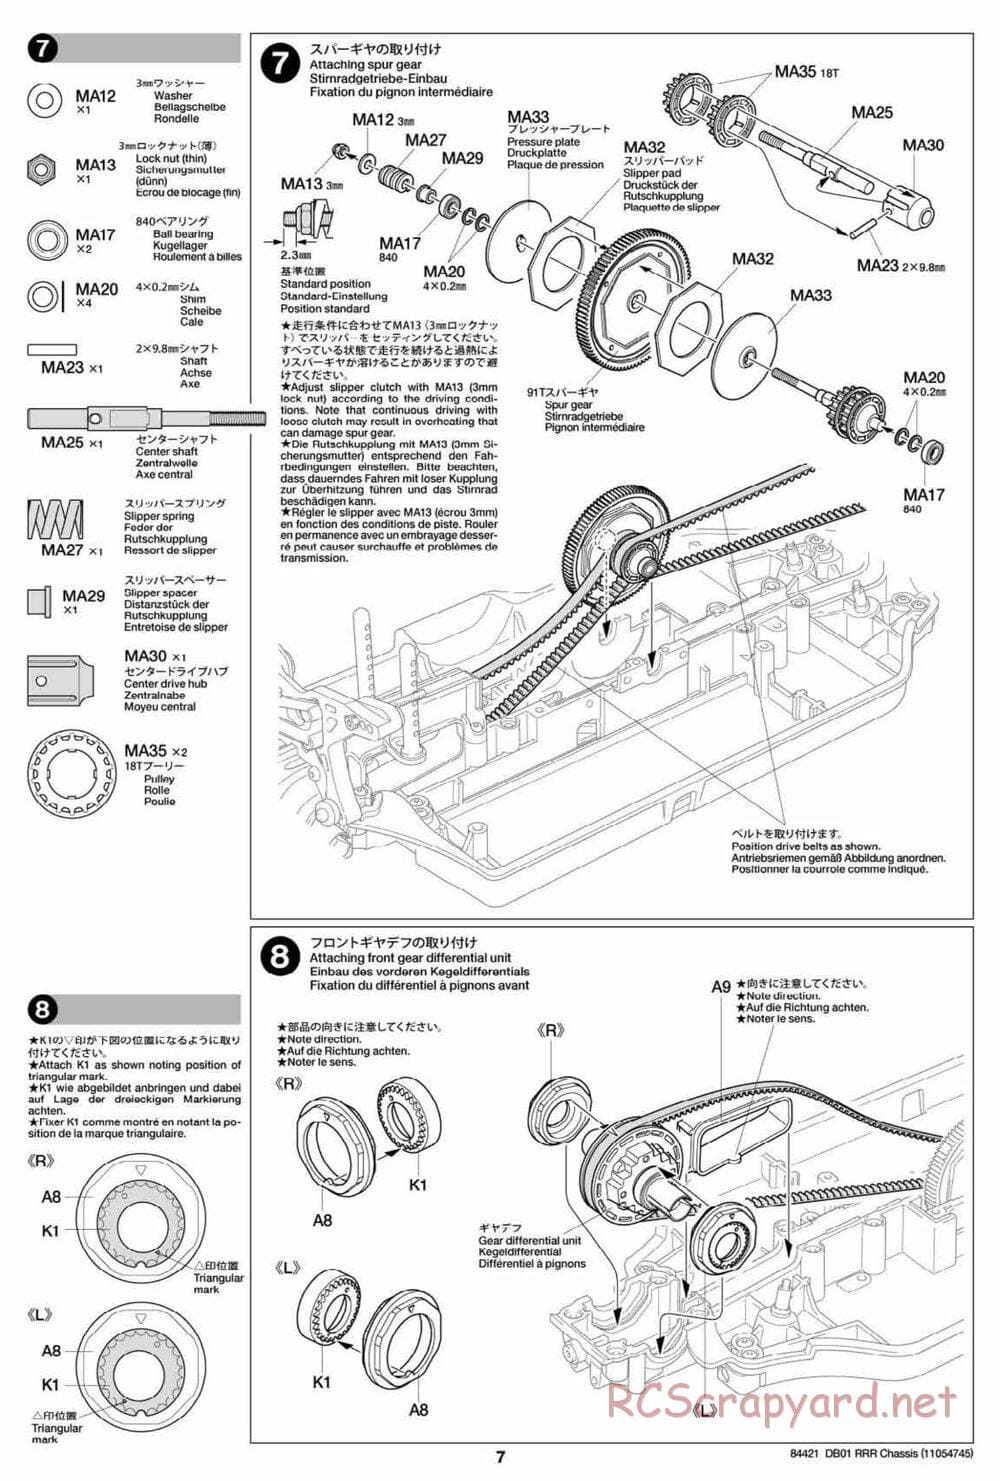 Tamiya - DB-01 RRR Chassis - Manual - Page 7